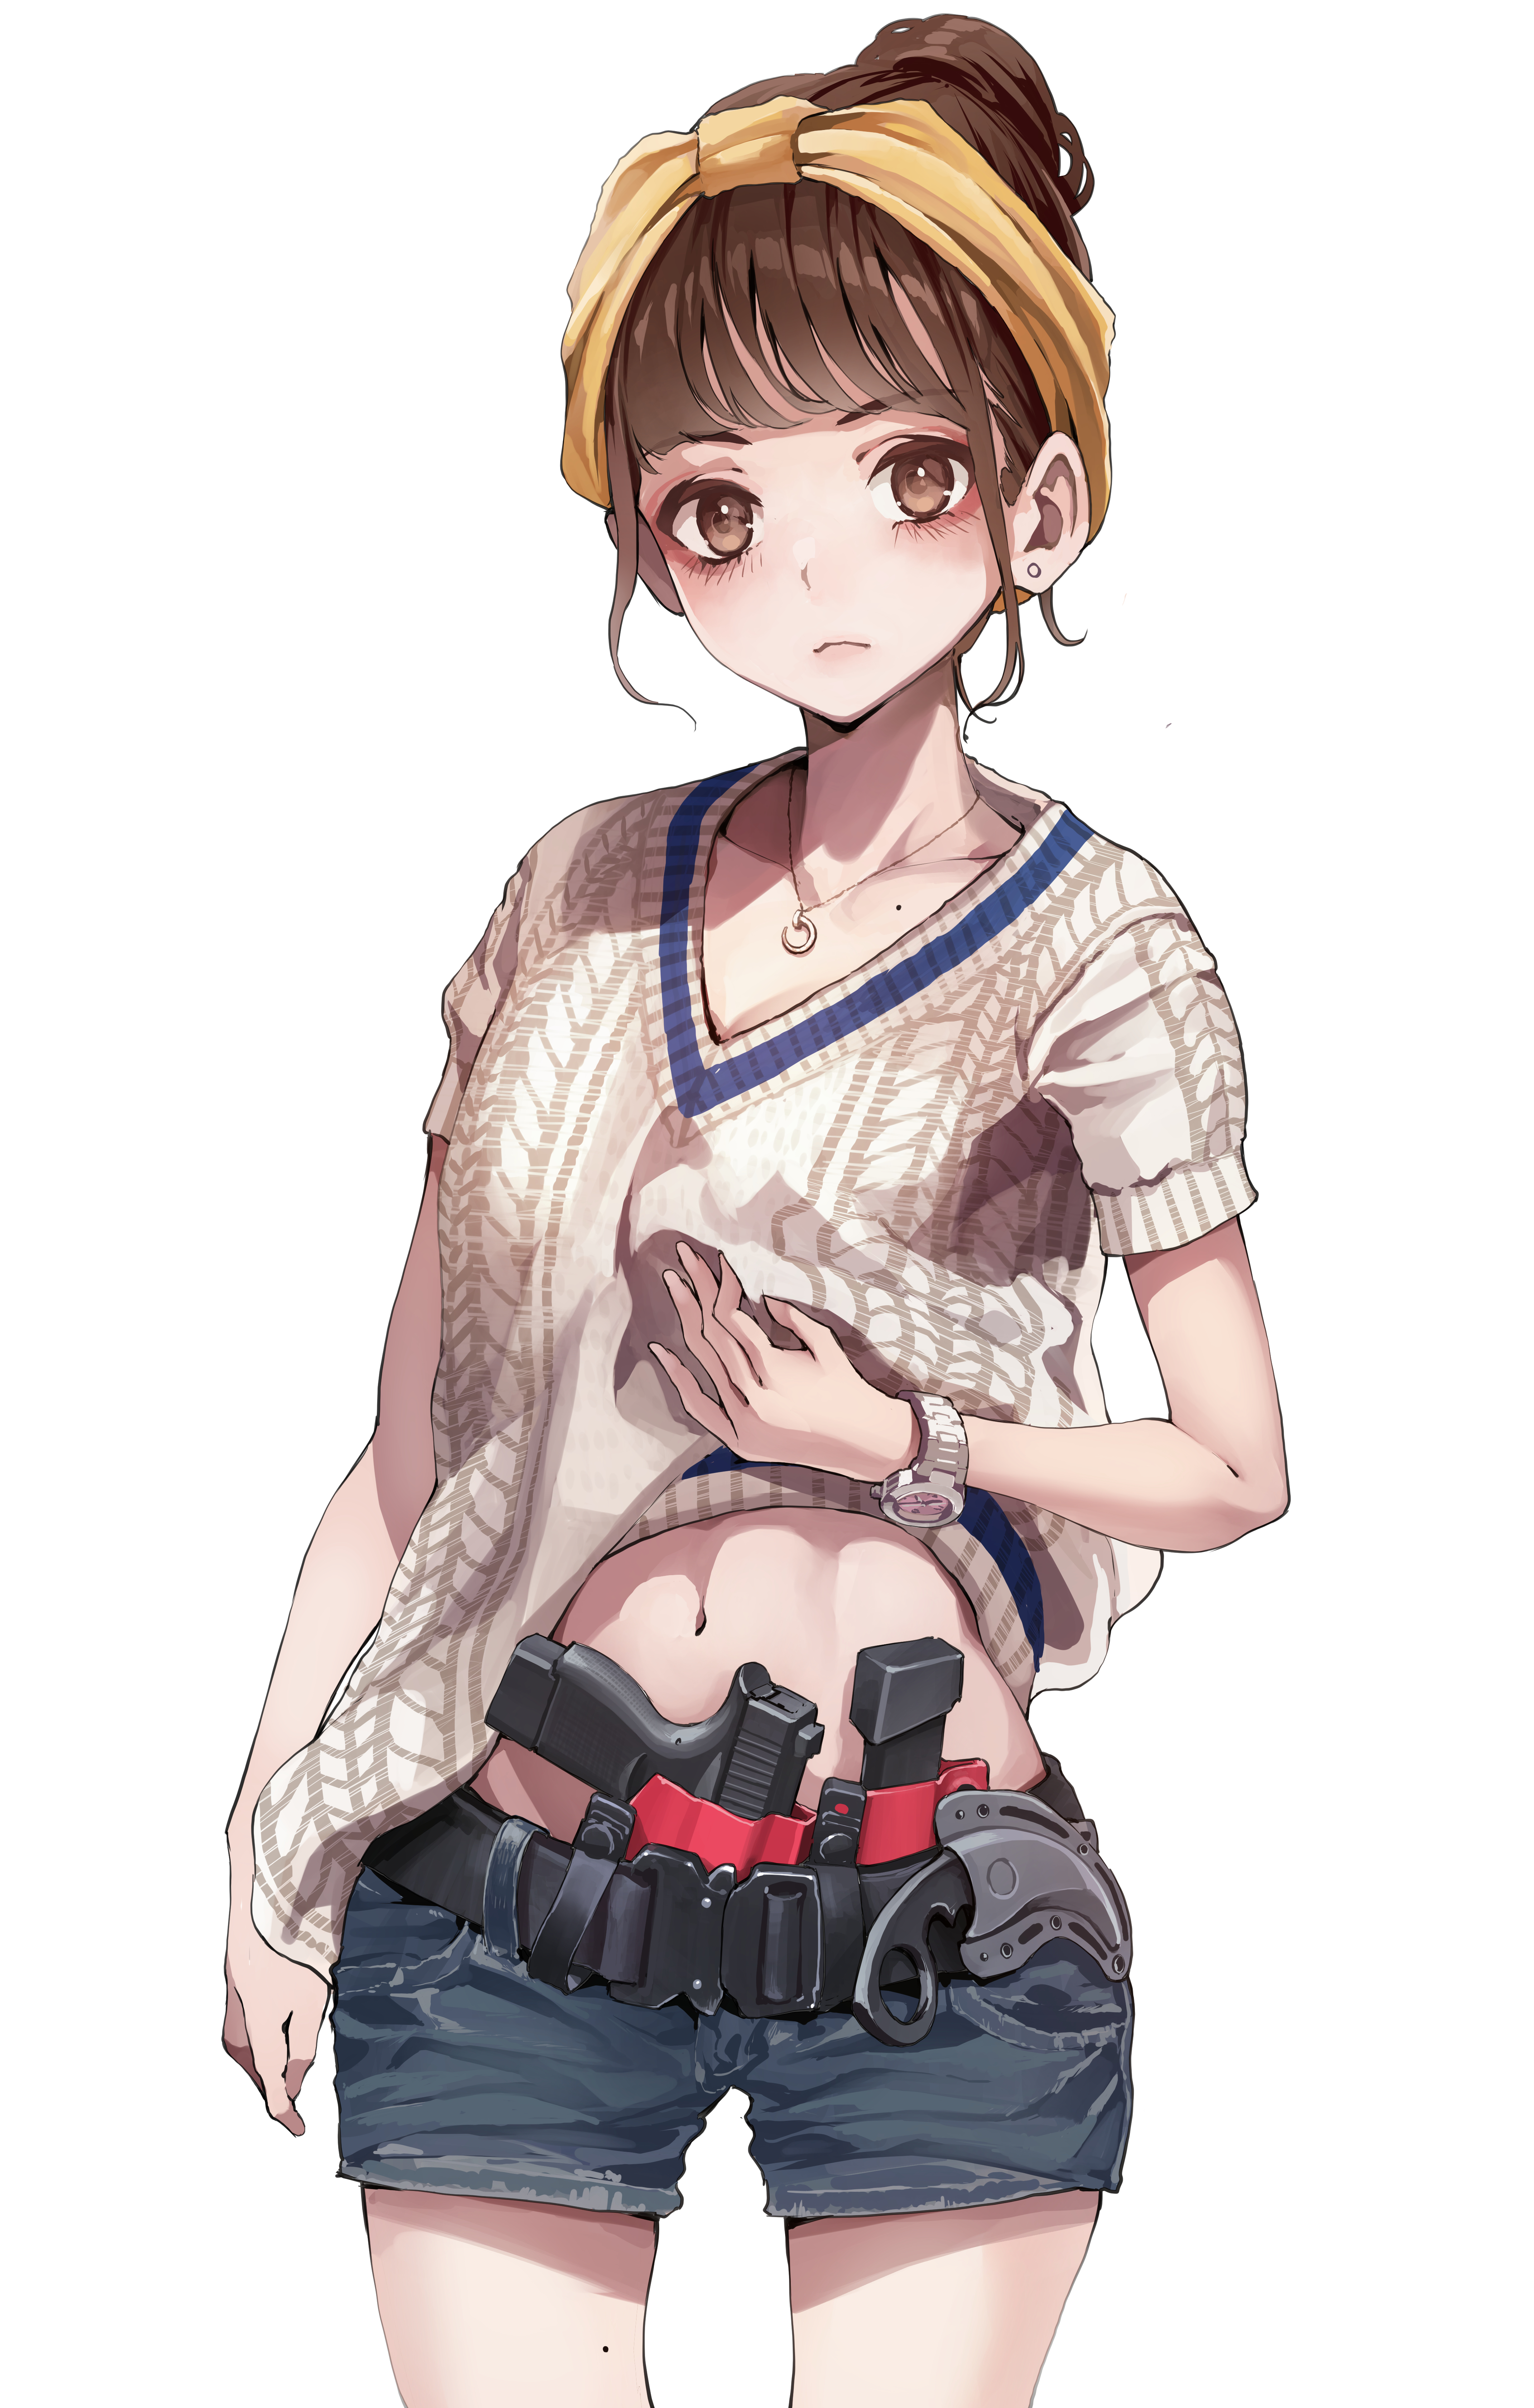 Anime 4283x6725 anime anime girls digital art artwork 2D portrait display koh brunette brown eyes sweater short shorts gun belly